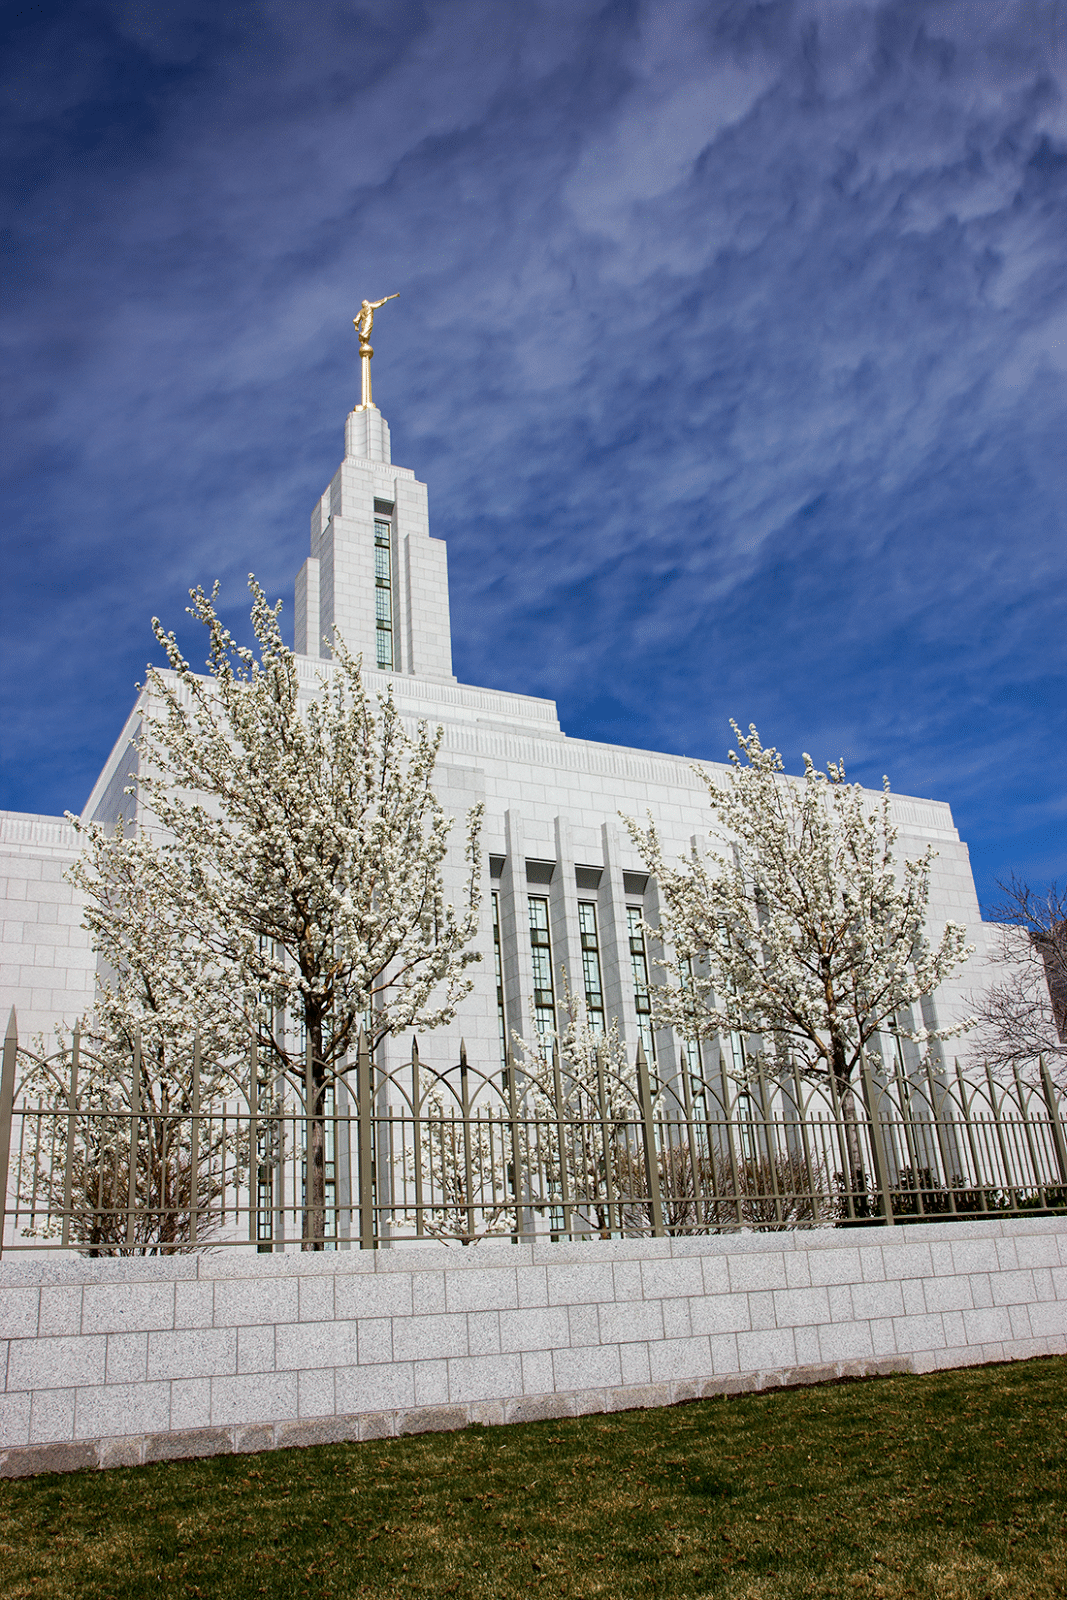 Spring blossoms at the Draper Utah Temple. 